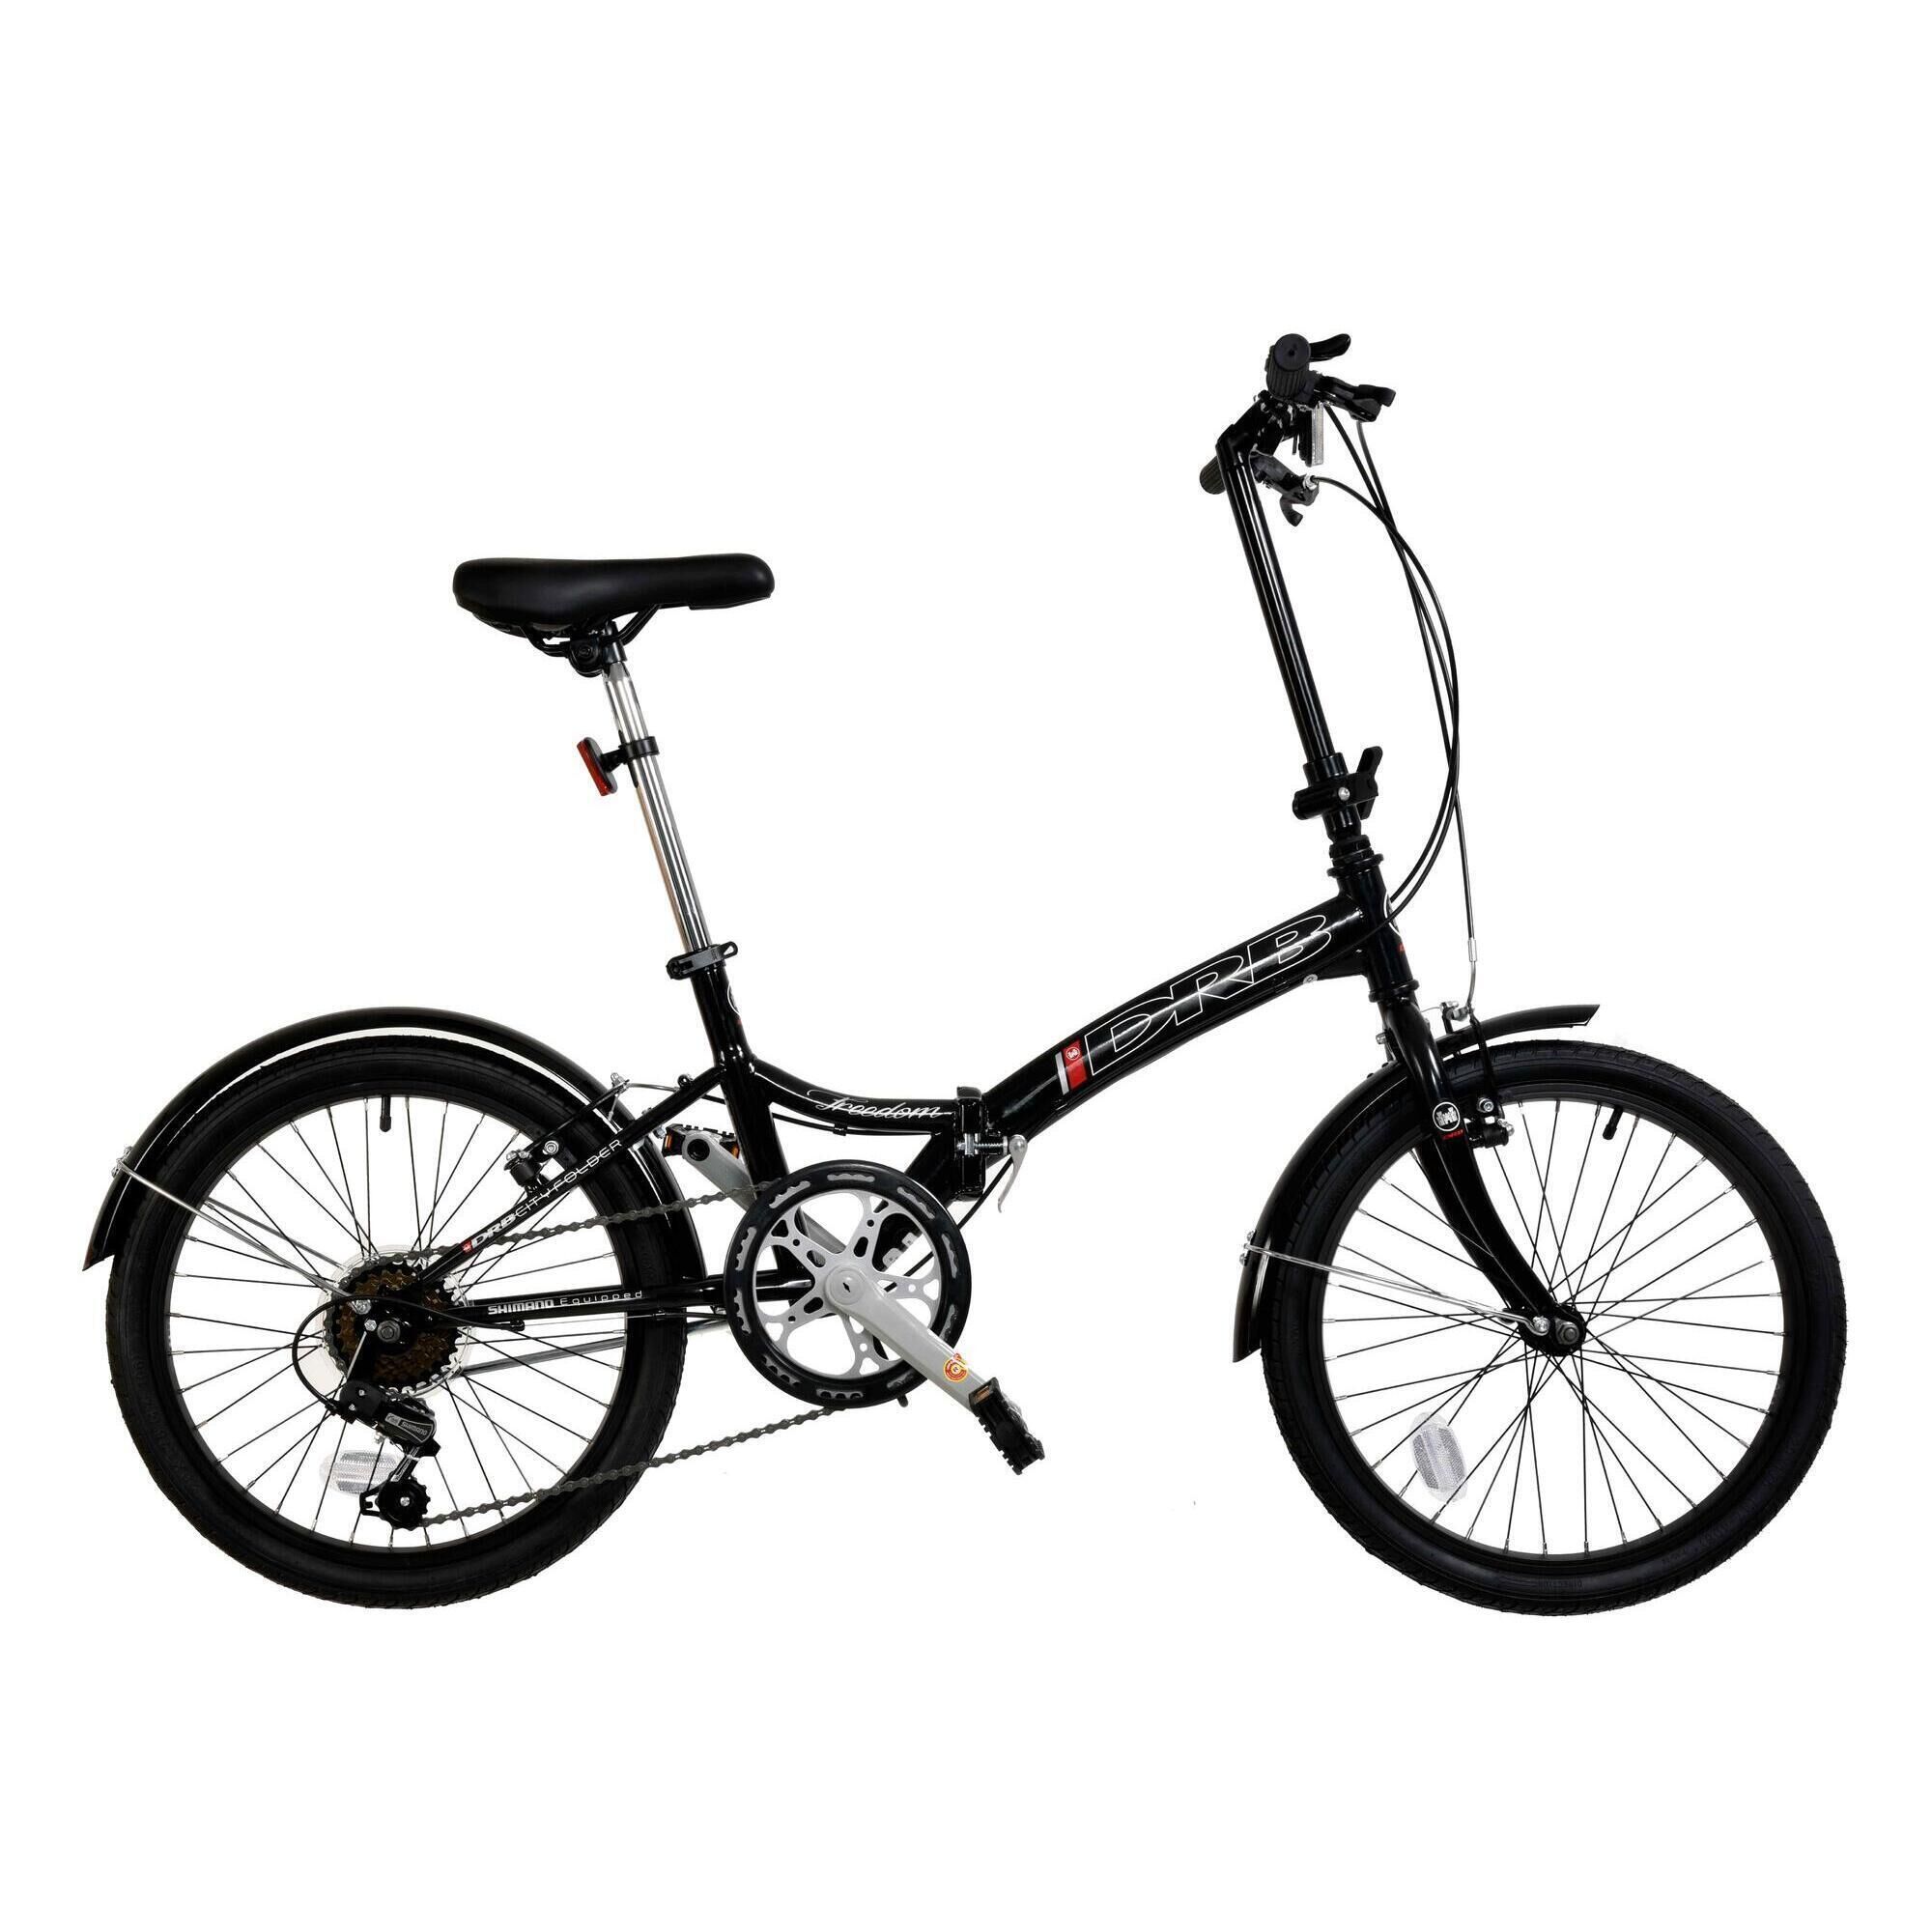 DALLINGRIDGE Dallingridge Freedom 20" Folding Commuter Bicycle - Black